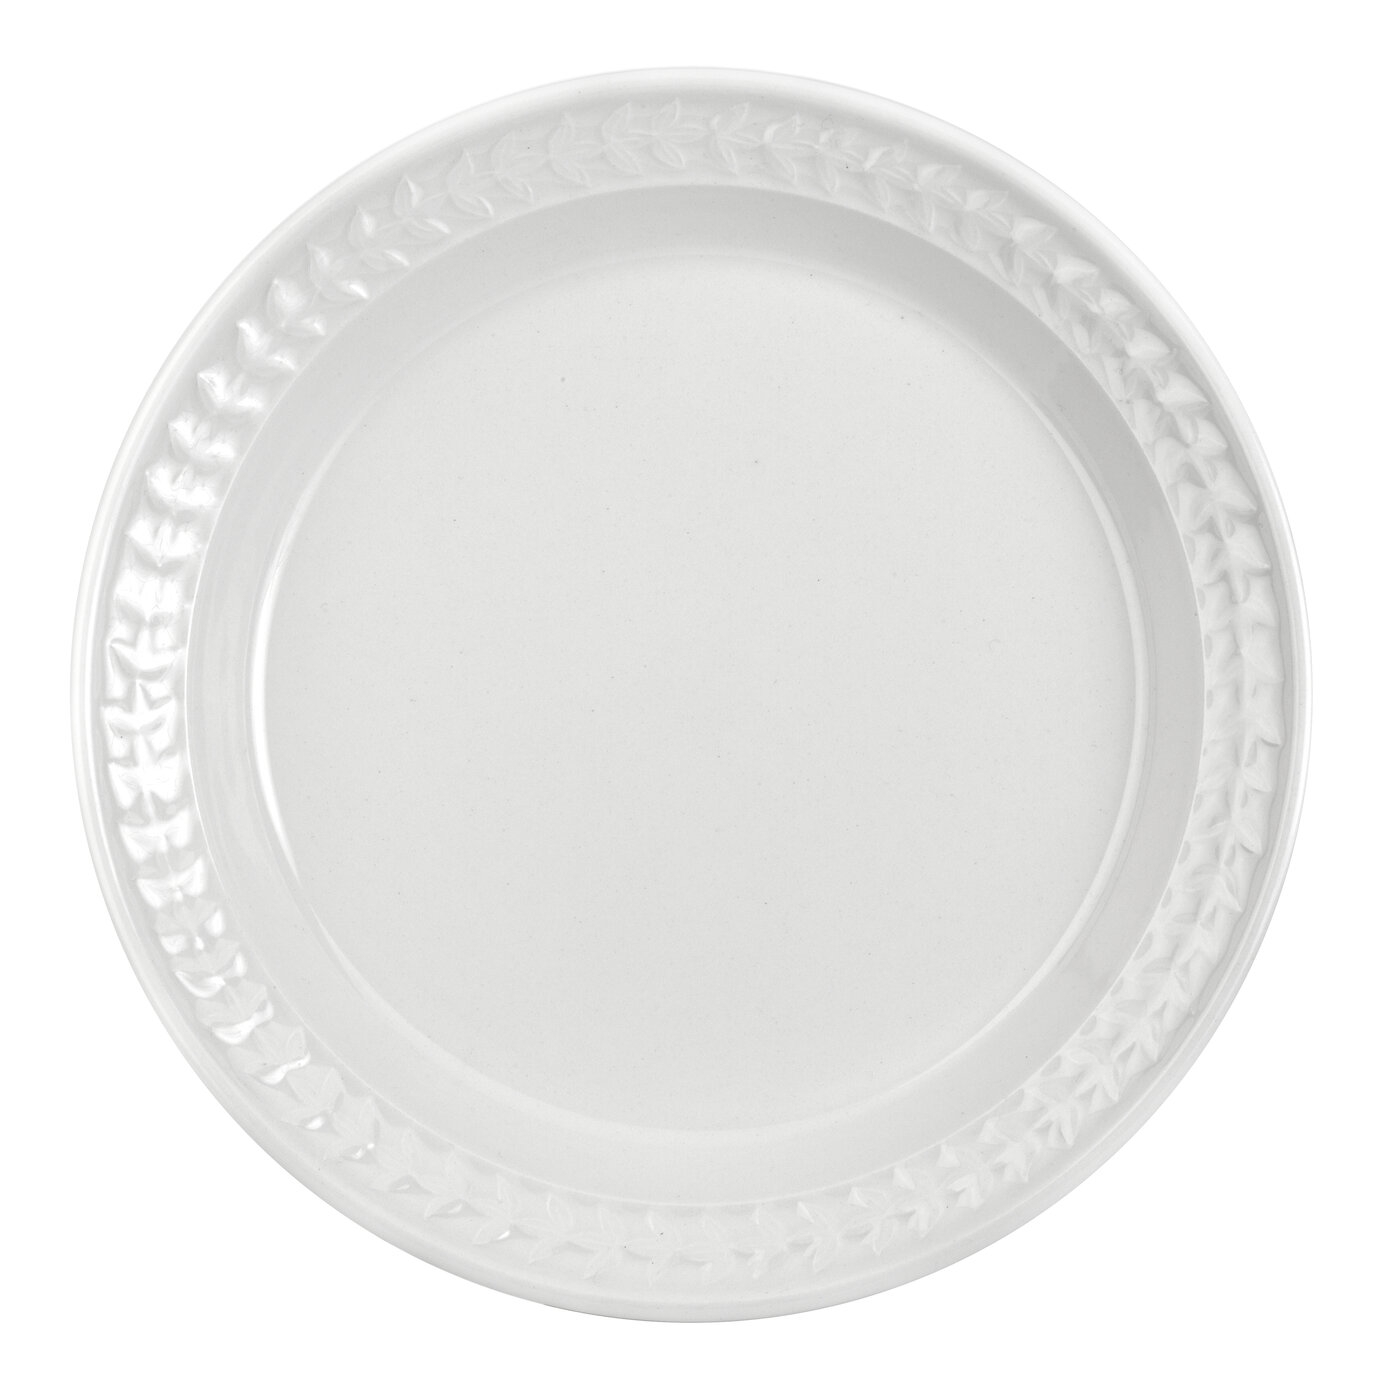 Botanic Garden Harmony Dinner Plate, White image number null